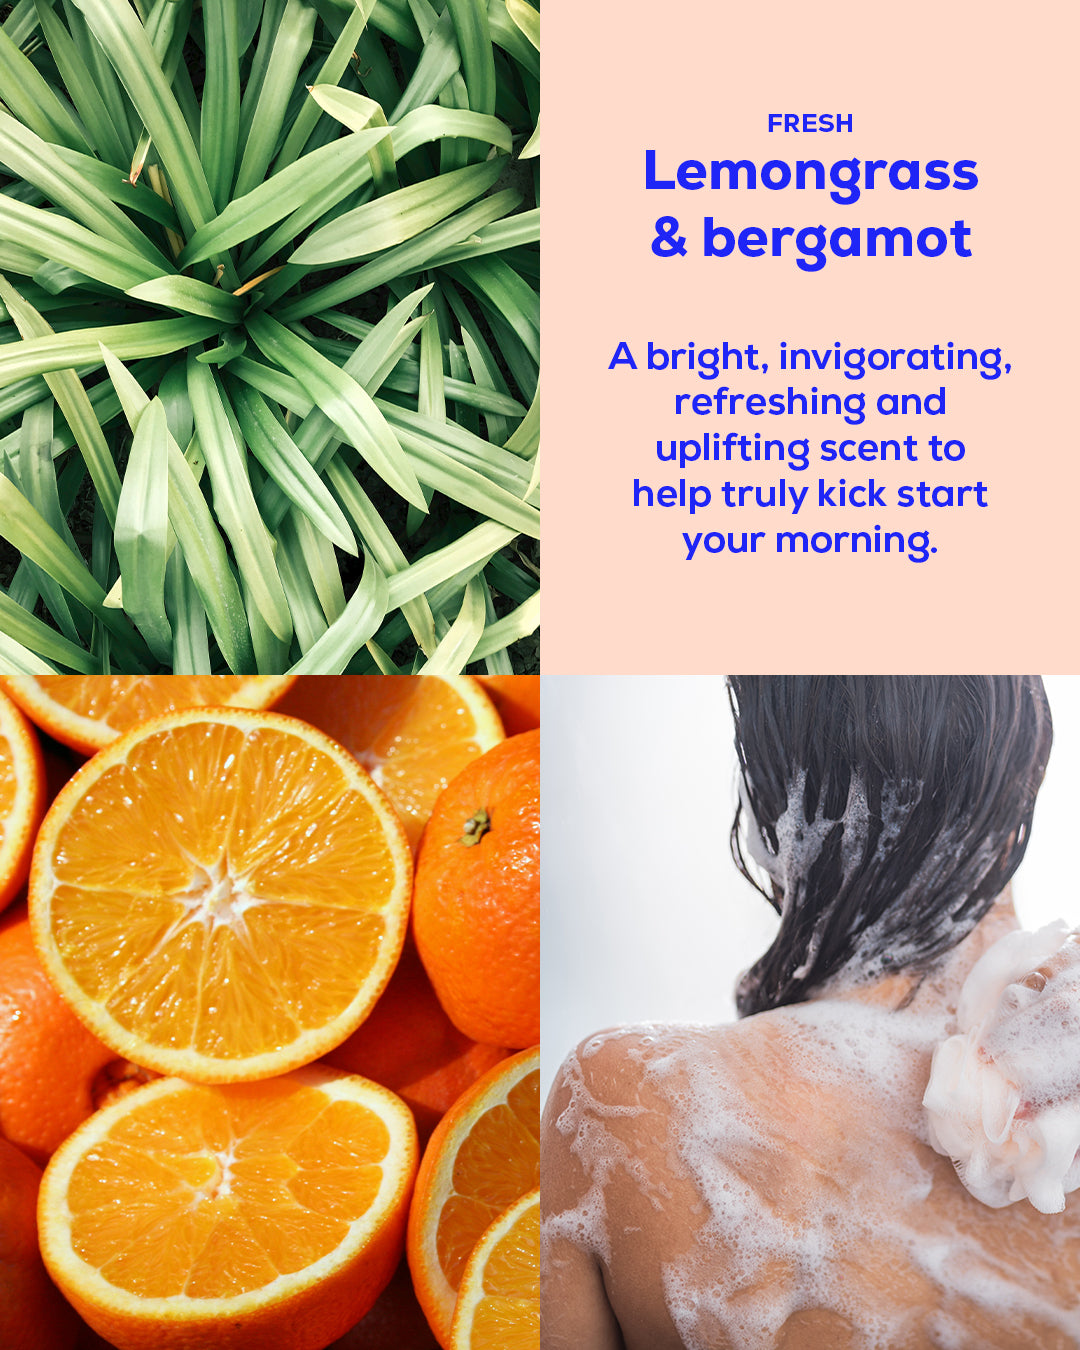 Lemongrass and bergamot